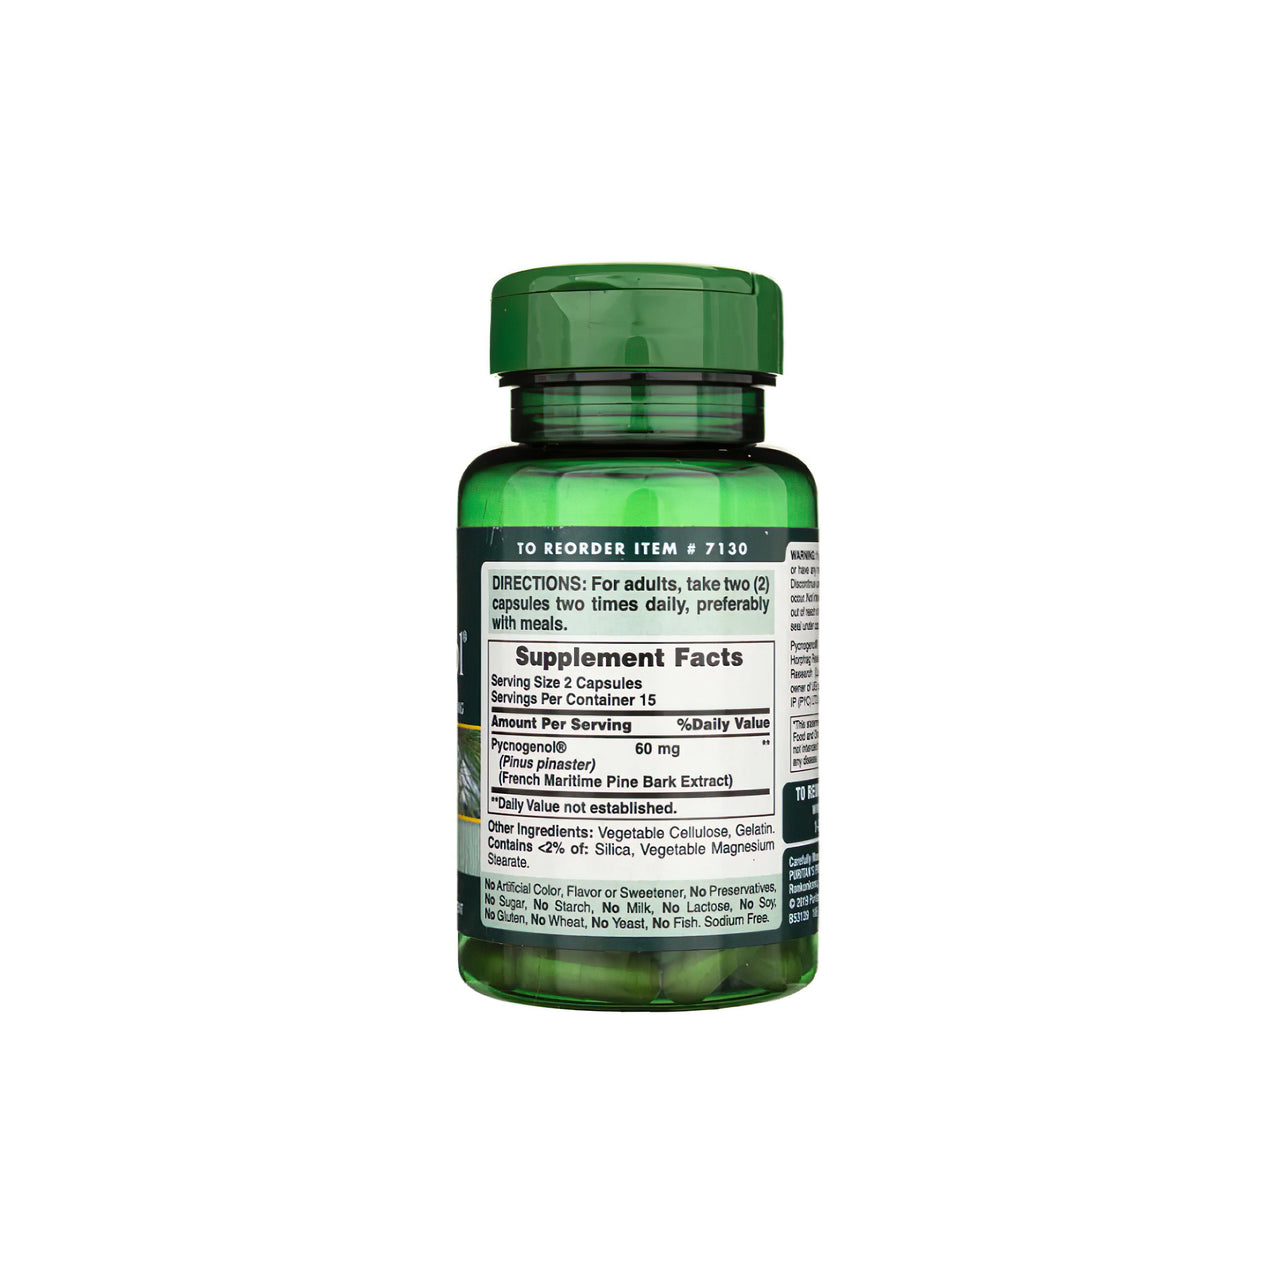 Un flacon de Pycnogenol 30 mg 30 gélules à libération rapide de Puritan's Pride avec des proanthocyanides flavonoïdes.